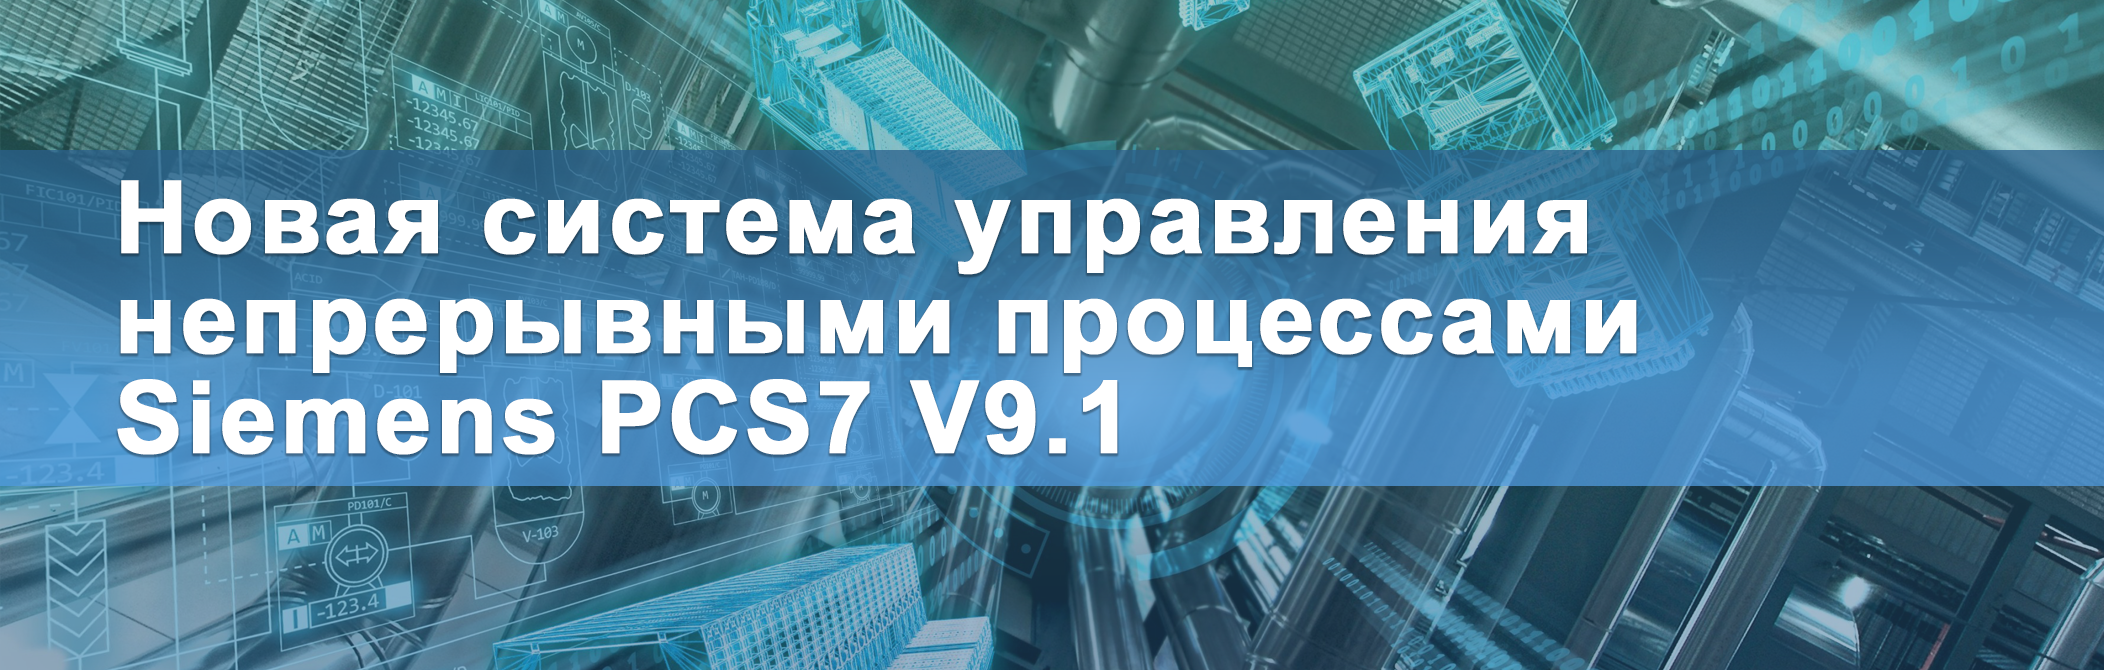 Новая система управления непрерывными процессами Siemens PCS7 V9.1